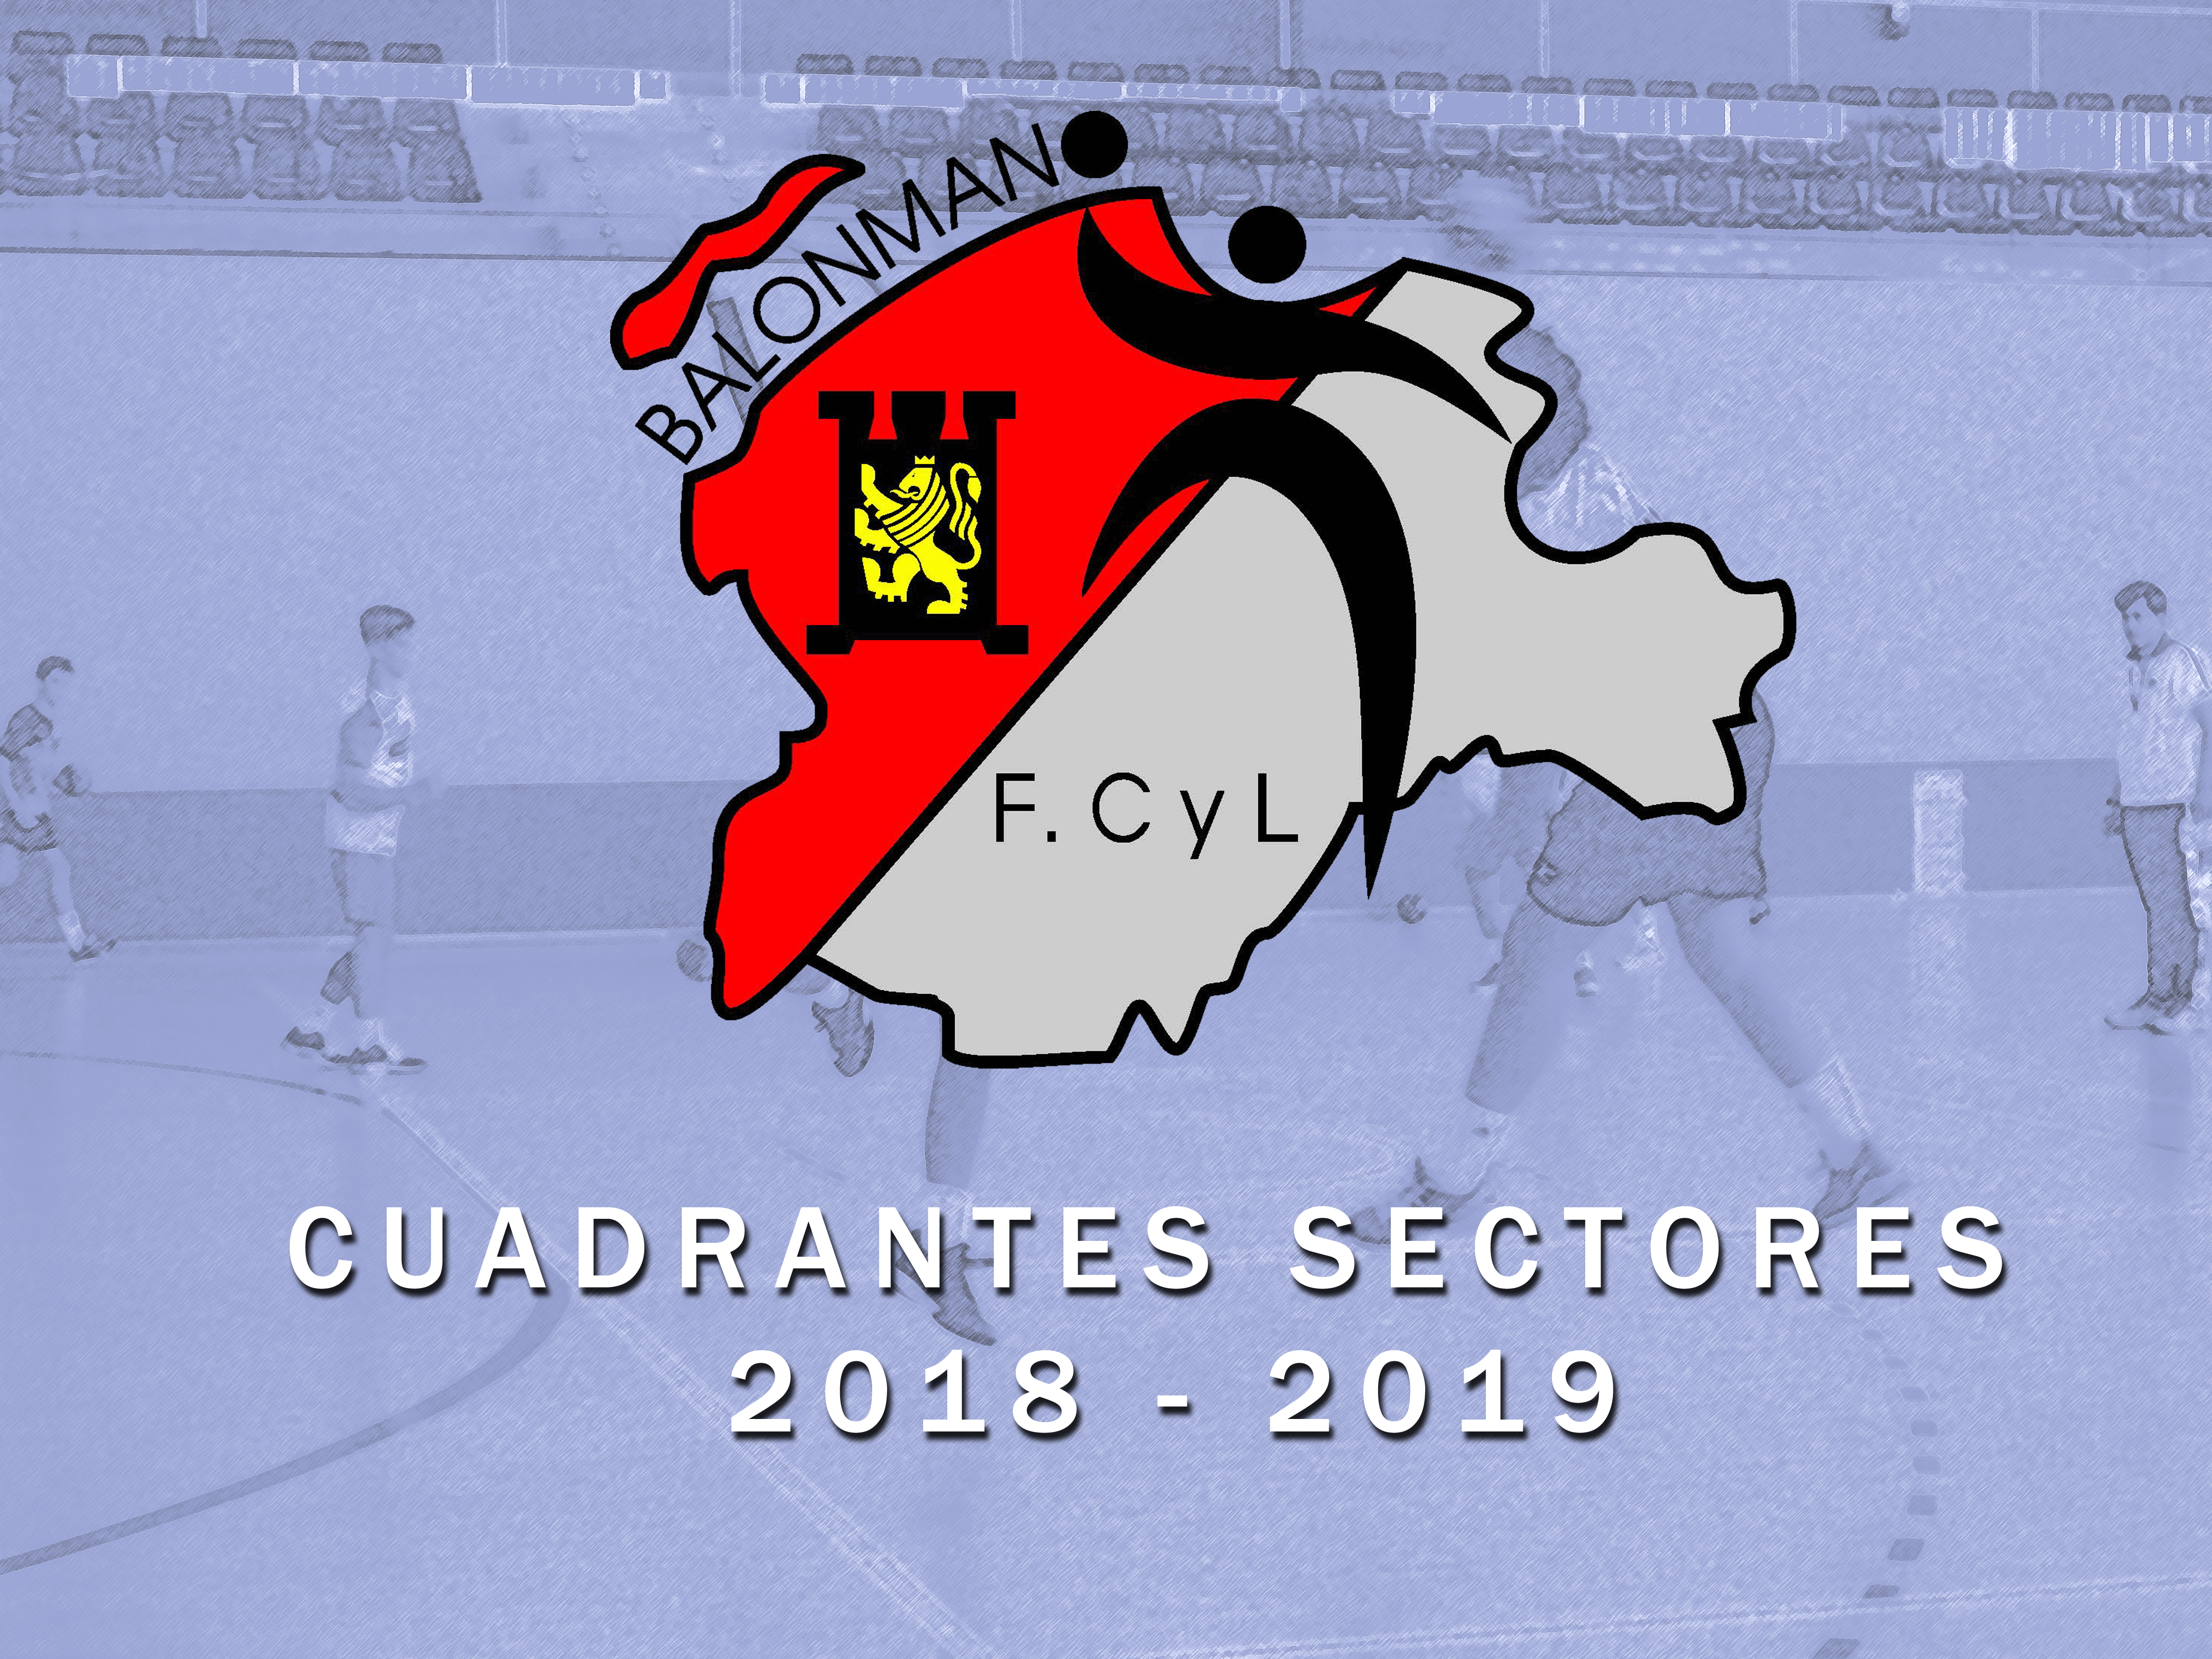 CUADRANTES SECTORES 2018-2019